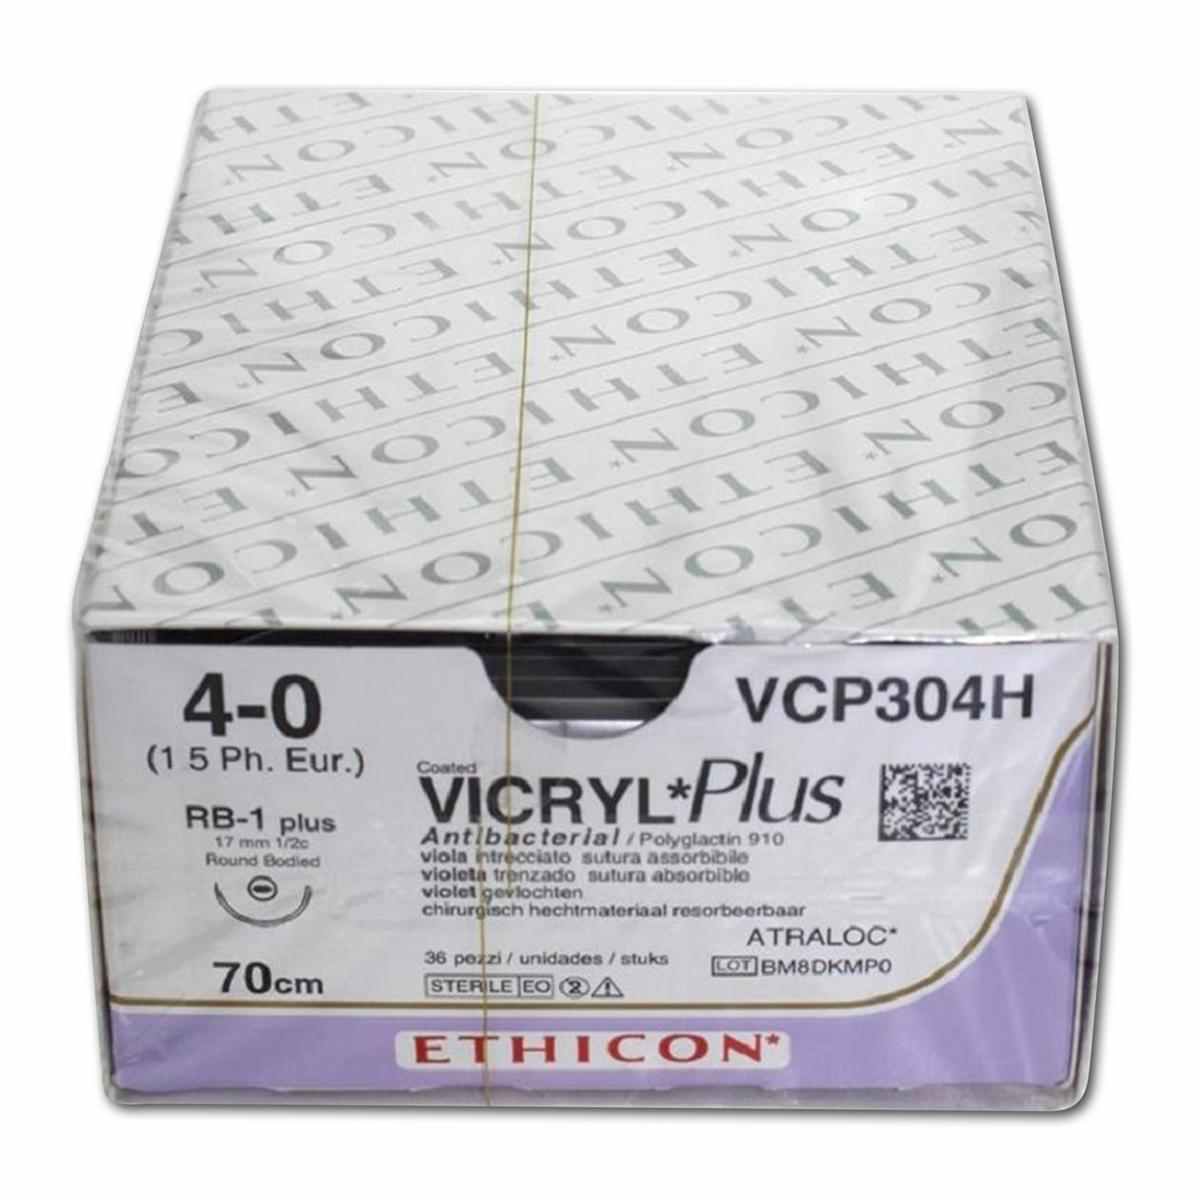 Suture Ethicon Vicryl Plus VCP 304H 36pz